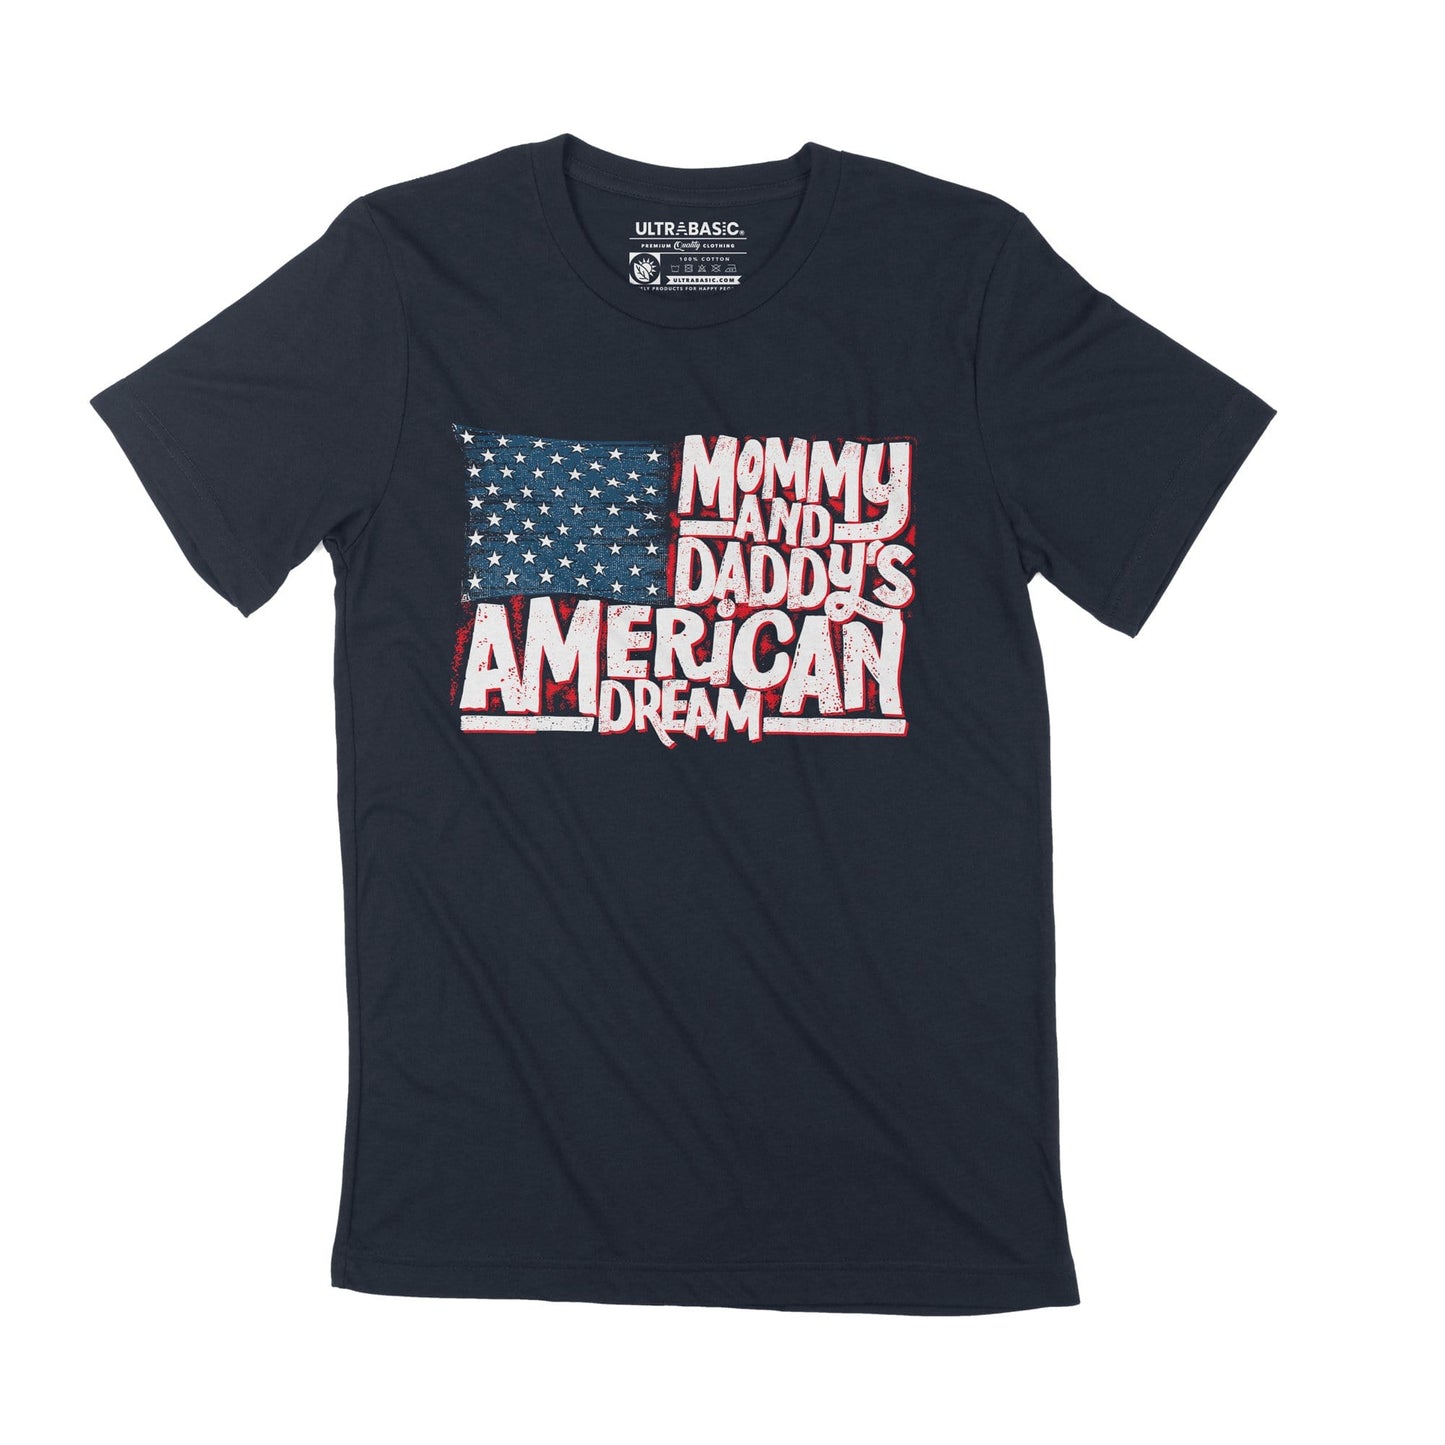 T-Shirt ULTRABASIC pour hommes, maman papa, rêve américain, drapeau américain, Vintage, décontracté, cadeau